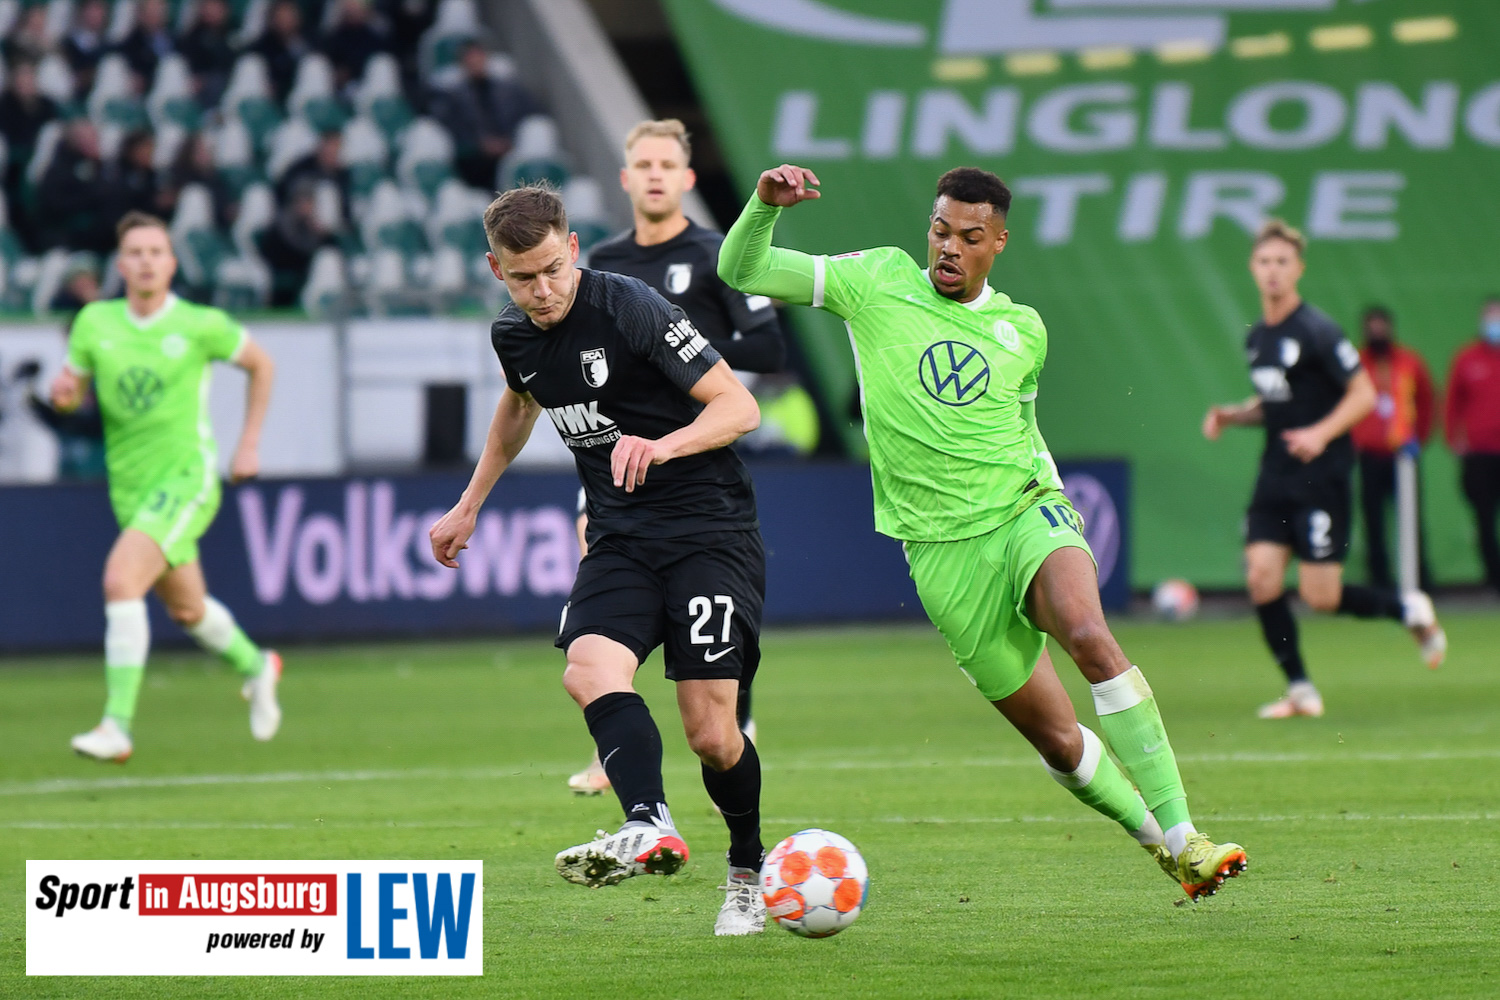 VfL Wolfsburg - FCA 06.11.21 - 13